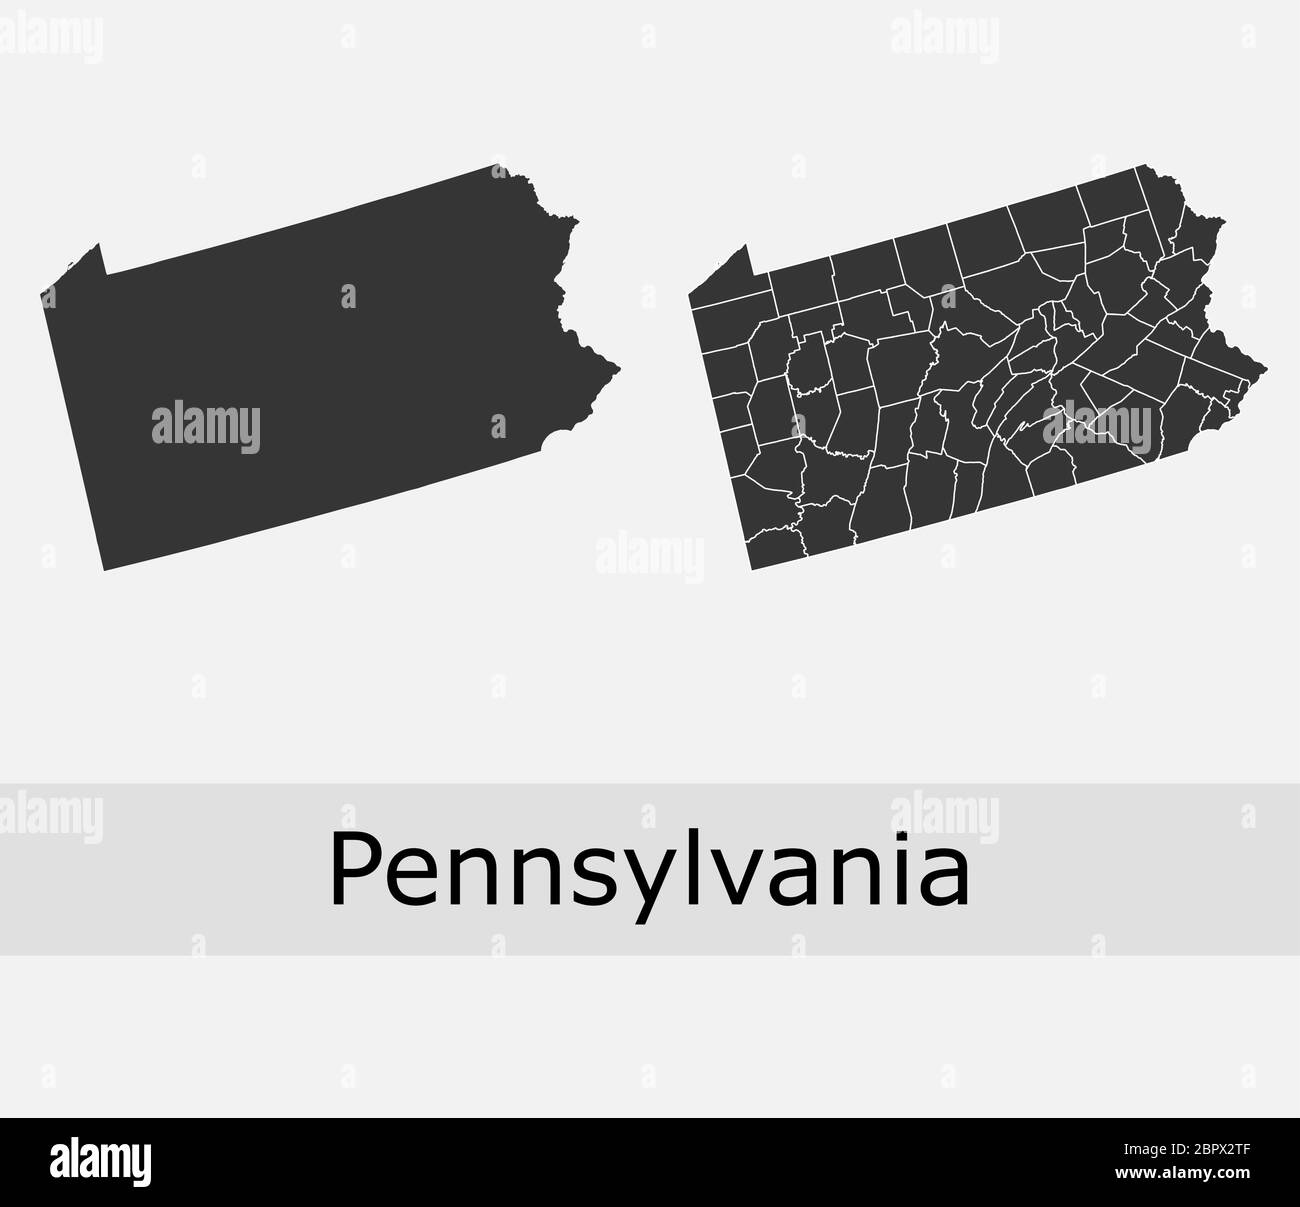 La Pennsylvanie cartes vectorielles comtés, cantons, régions, municipalités, départements, frontières Illustration de Vecteur